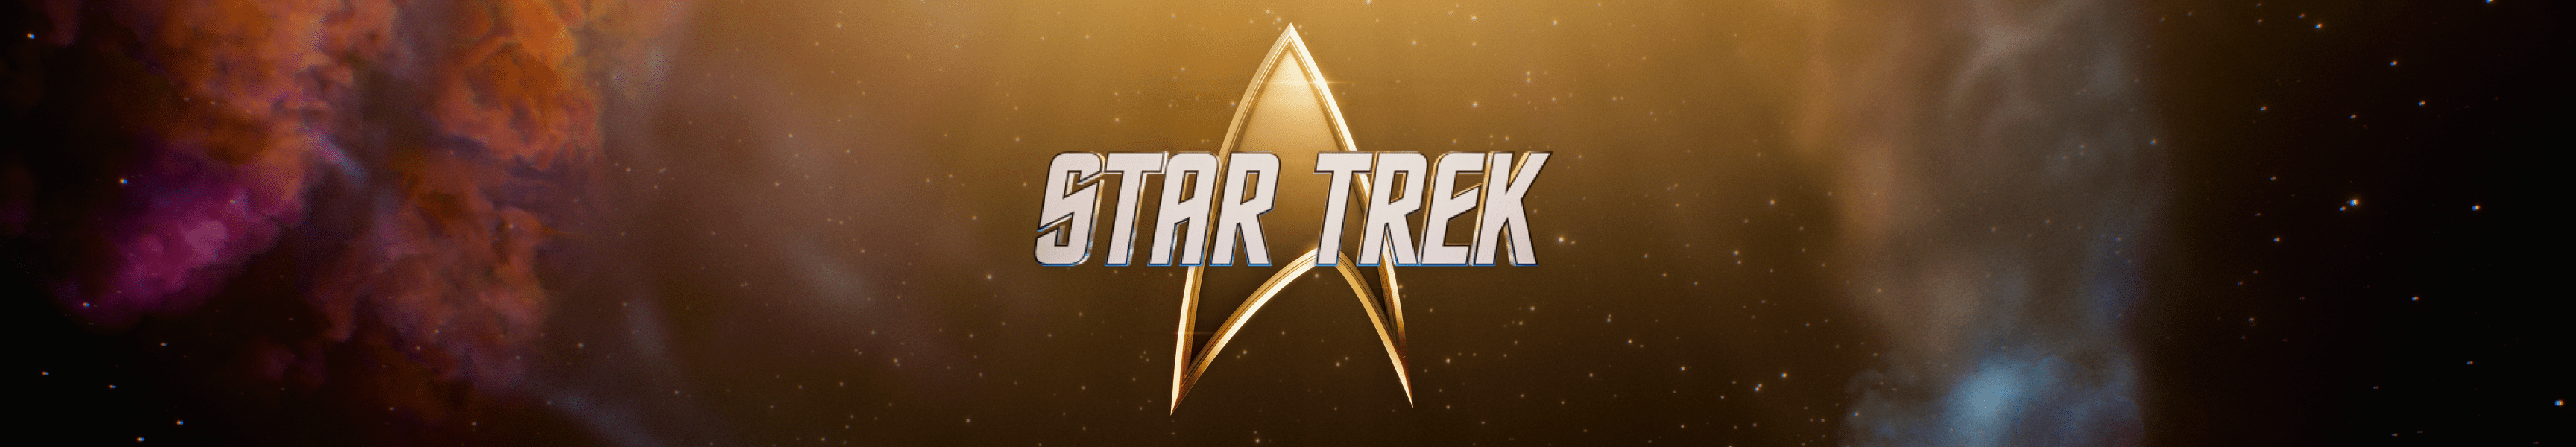 Star Trek Personalizado Regalos